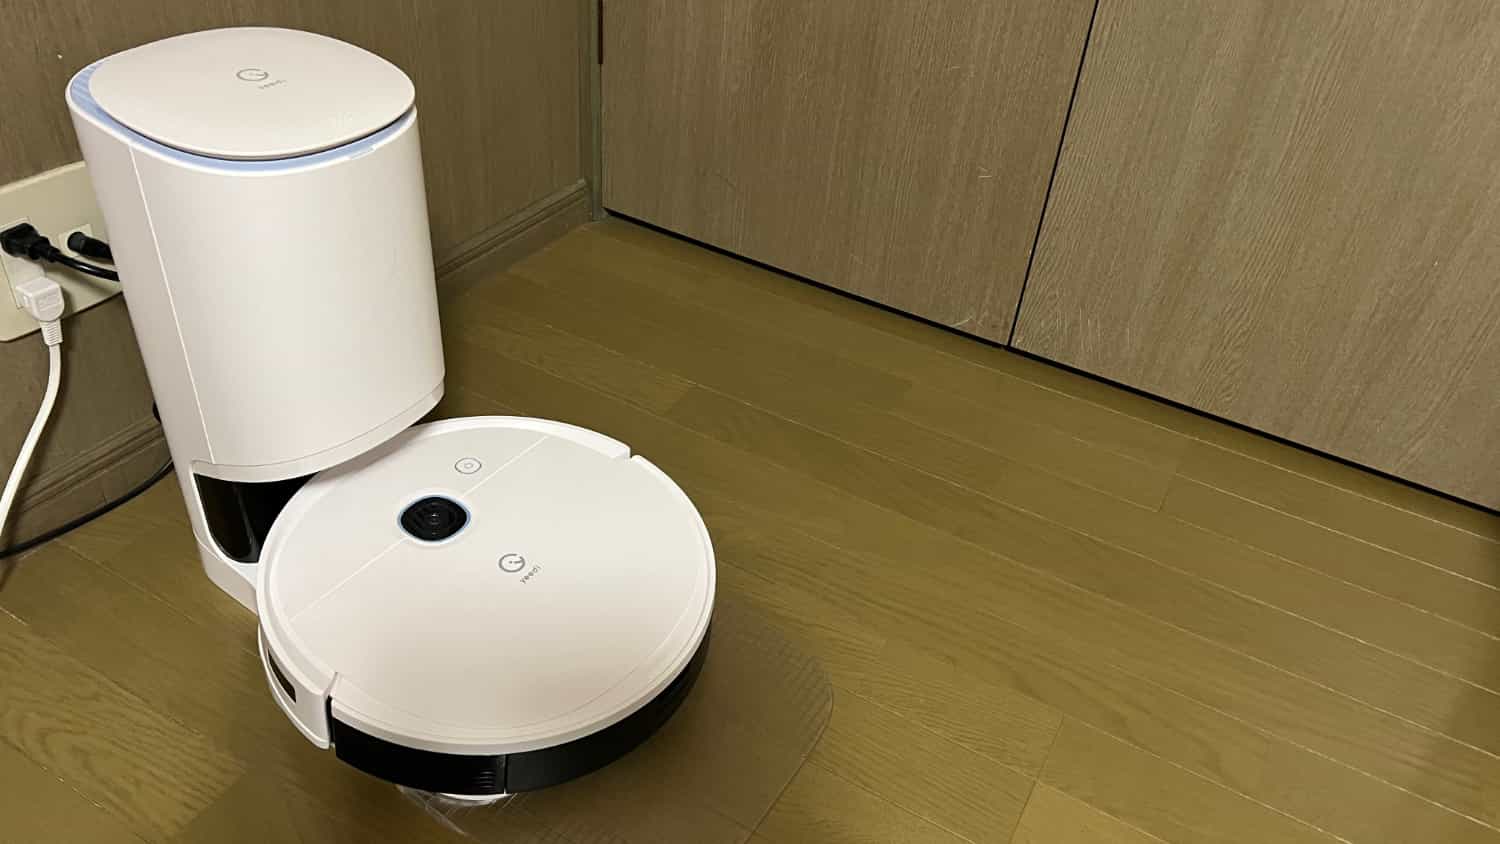 【レビュー】我が家にもロボット掃除機がやってきました。「yeedi vac 2 pro」がめちやくちゃ快適です［PR］
